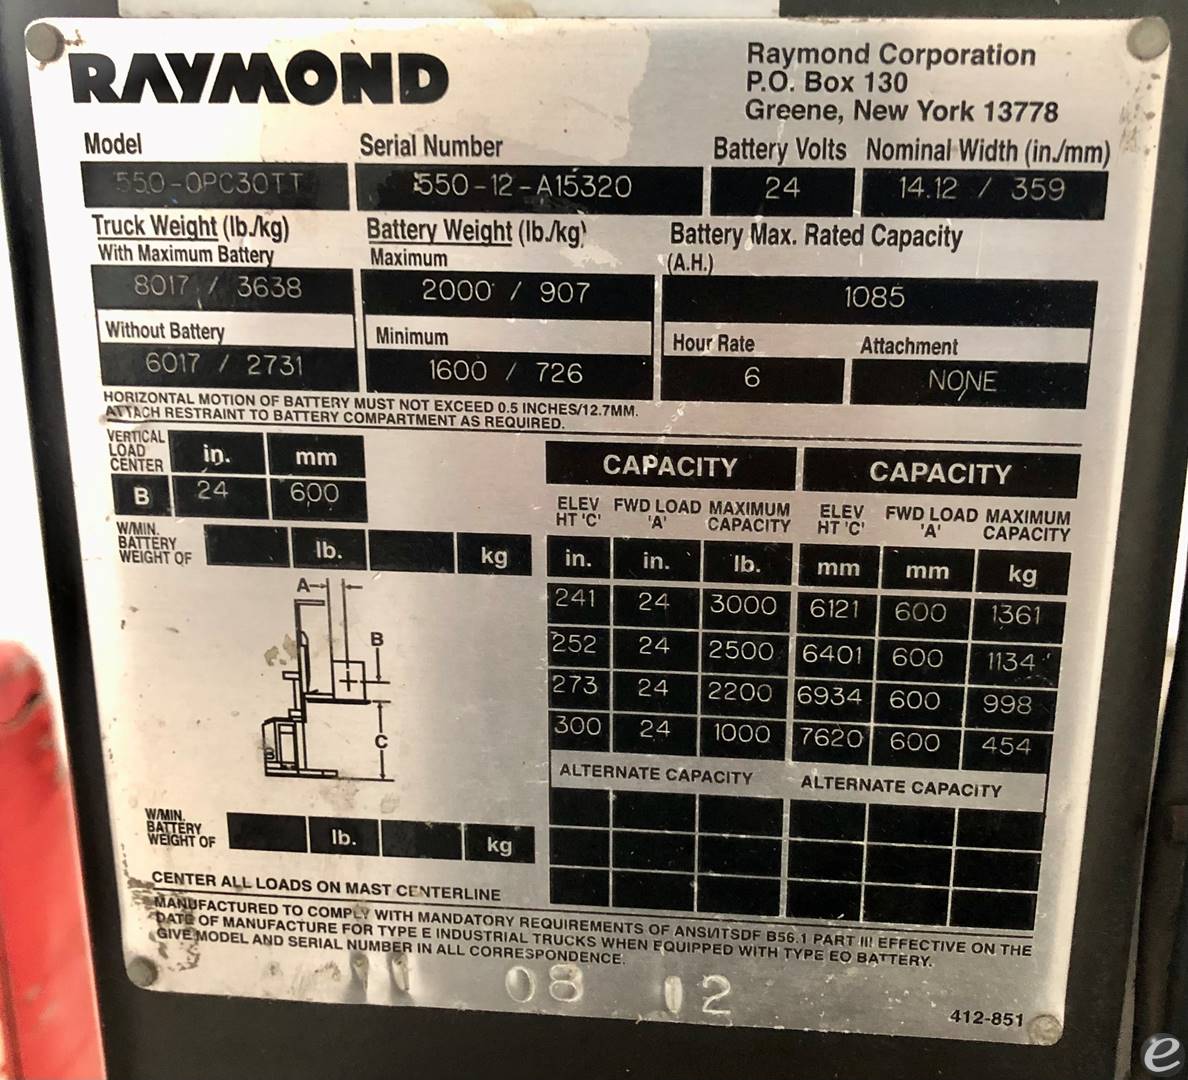 2012 Raymond 550-0PC30TT